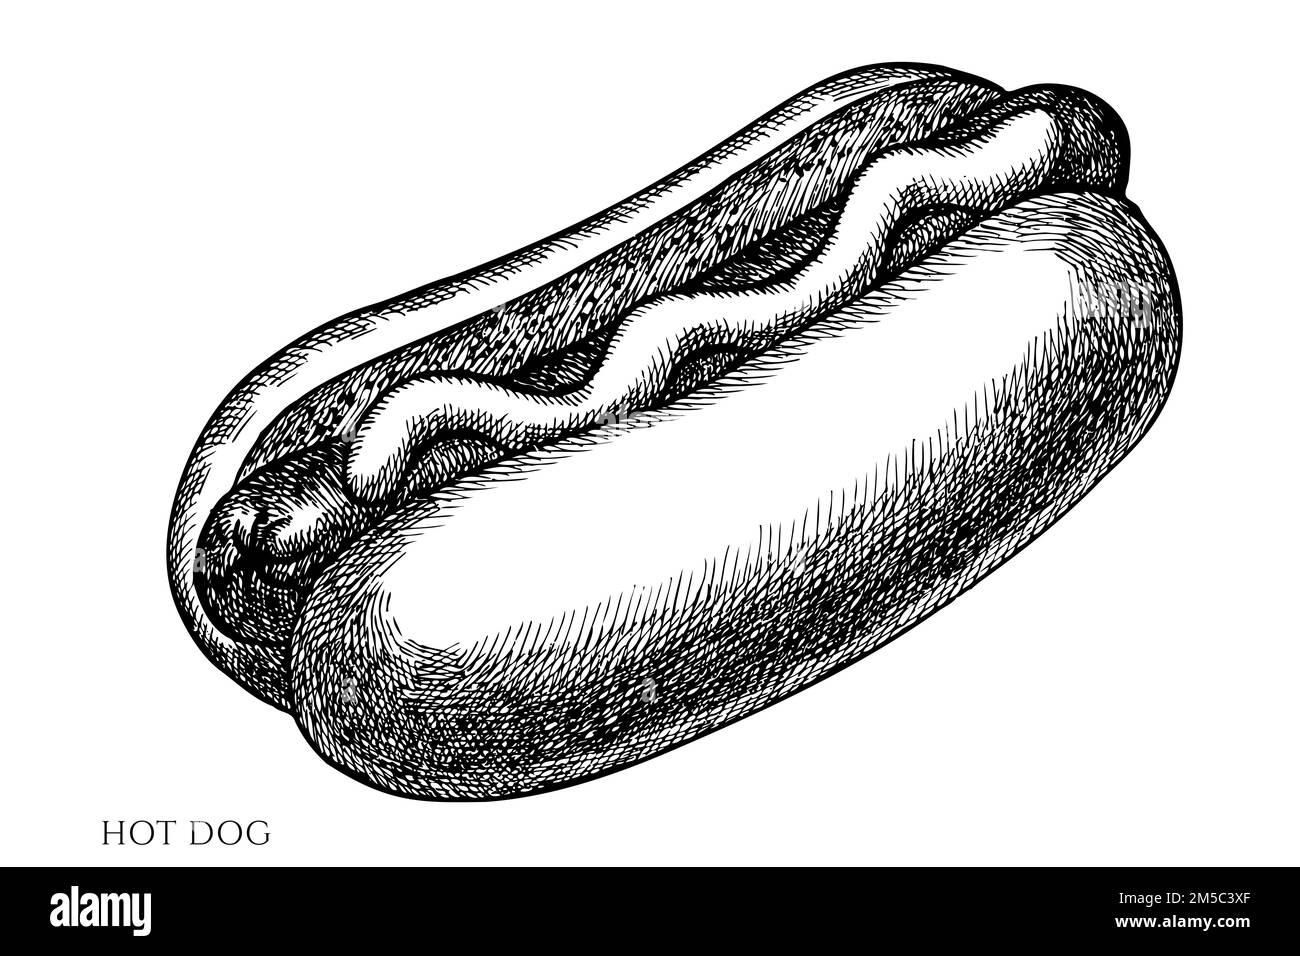 Collection d'illustrations vectorielles vintage Carnival Food. Hot dog noir et blanc. Illustration de Vecteur